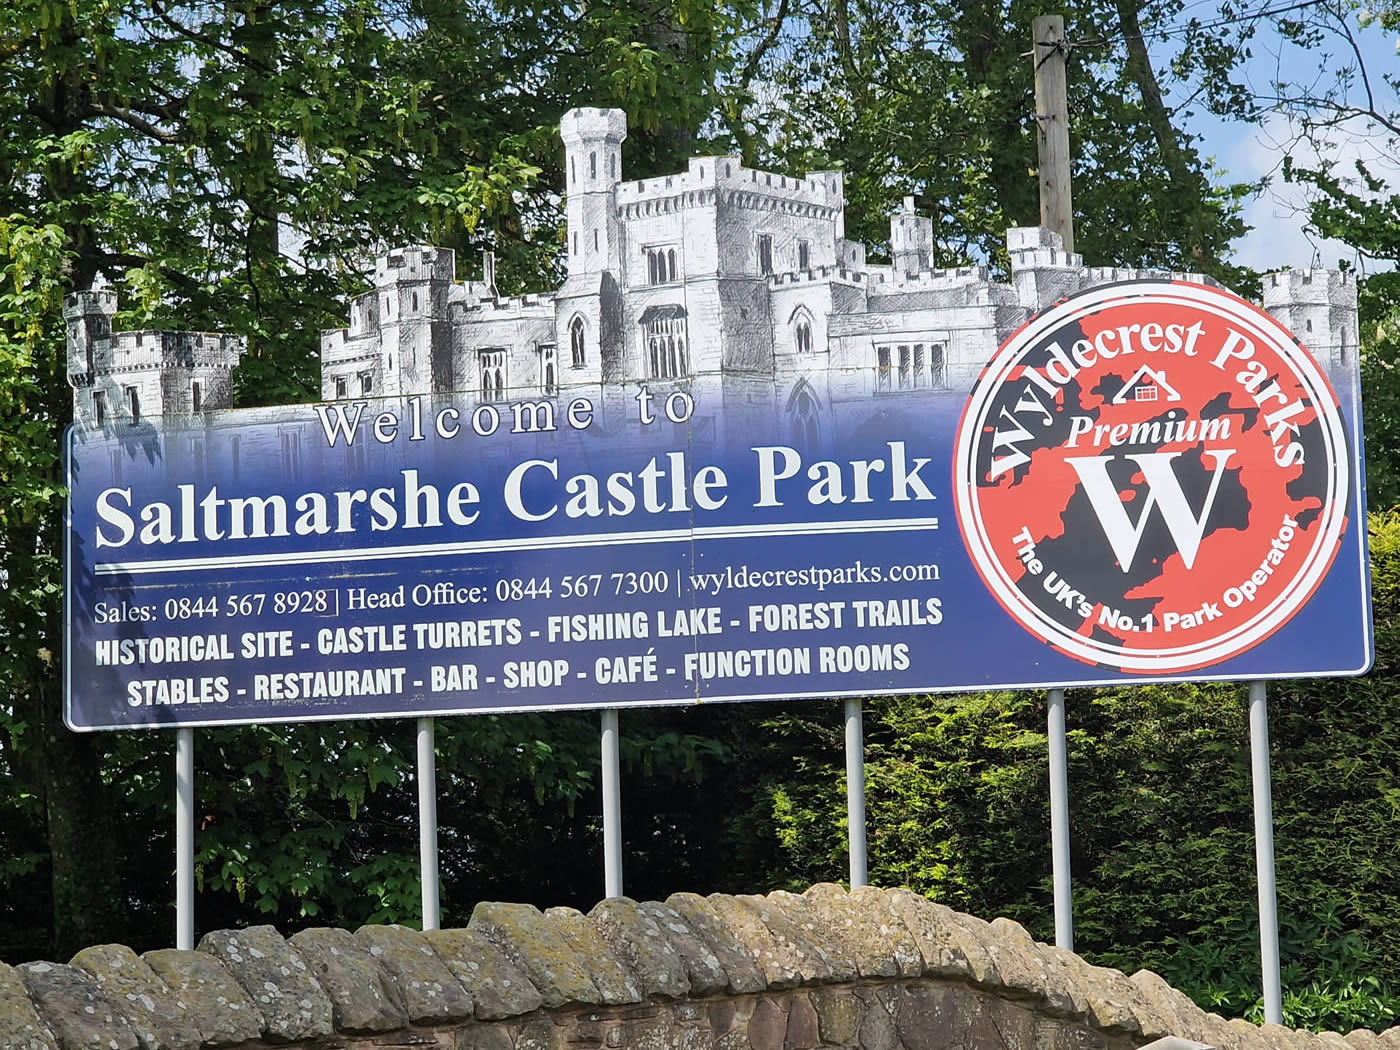 Omar Heritage ECS8 on Saltmarshe Castle Park Entrance Sign